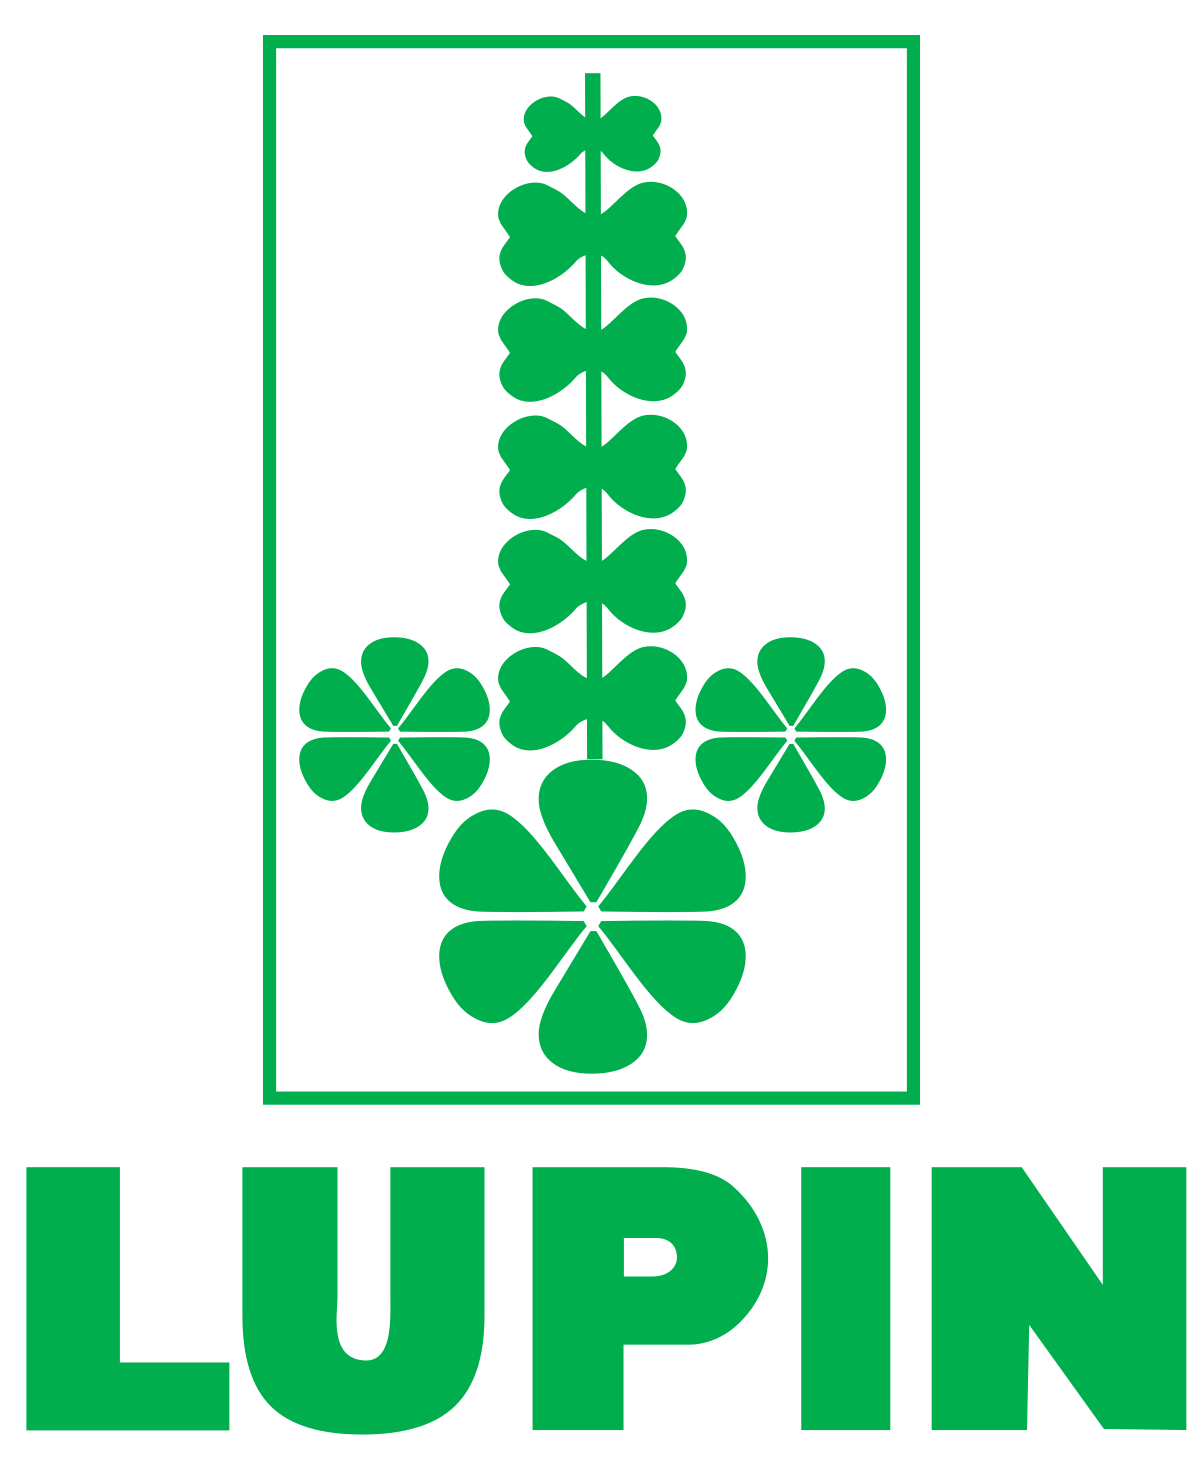 Lupin Limited - Wikipedia